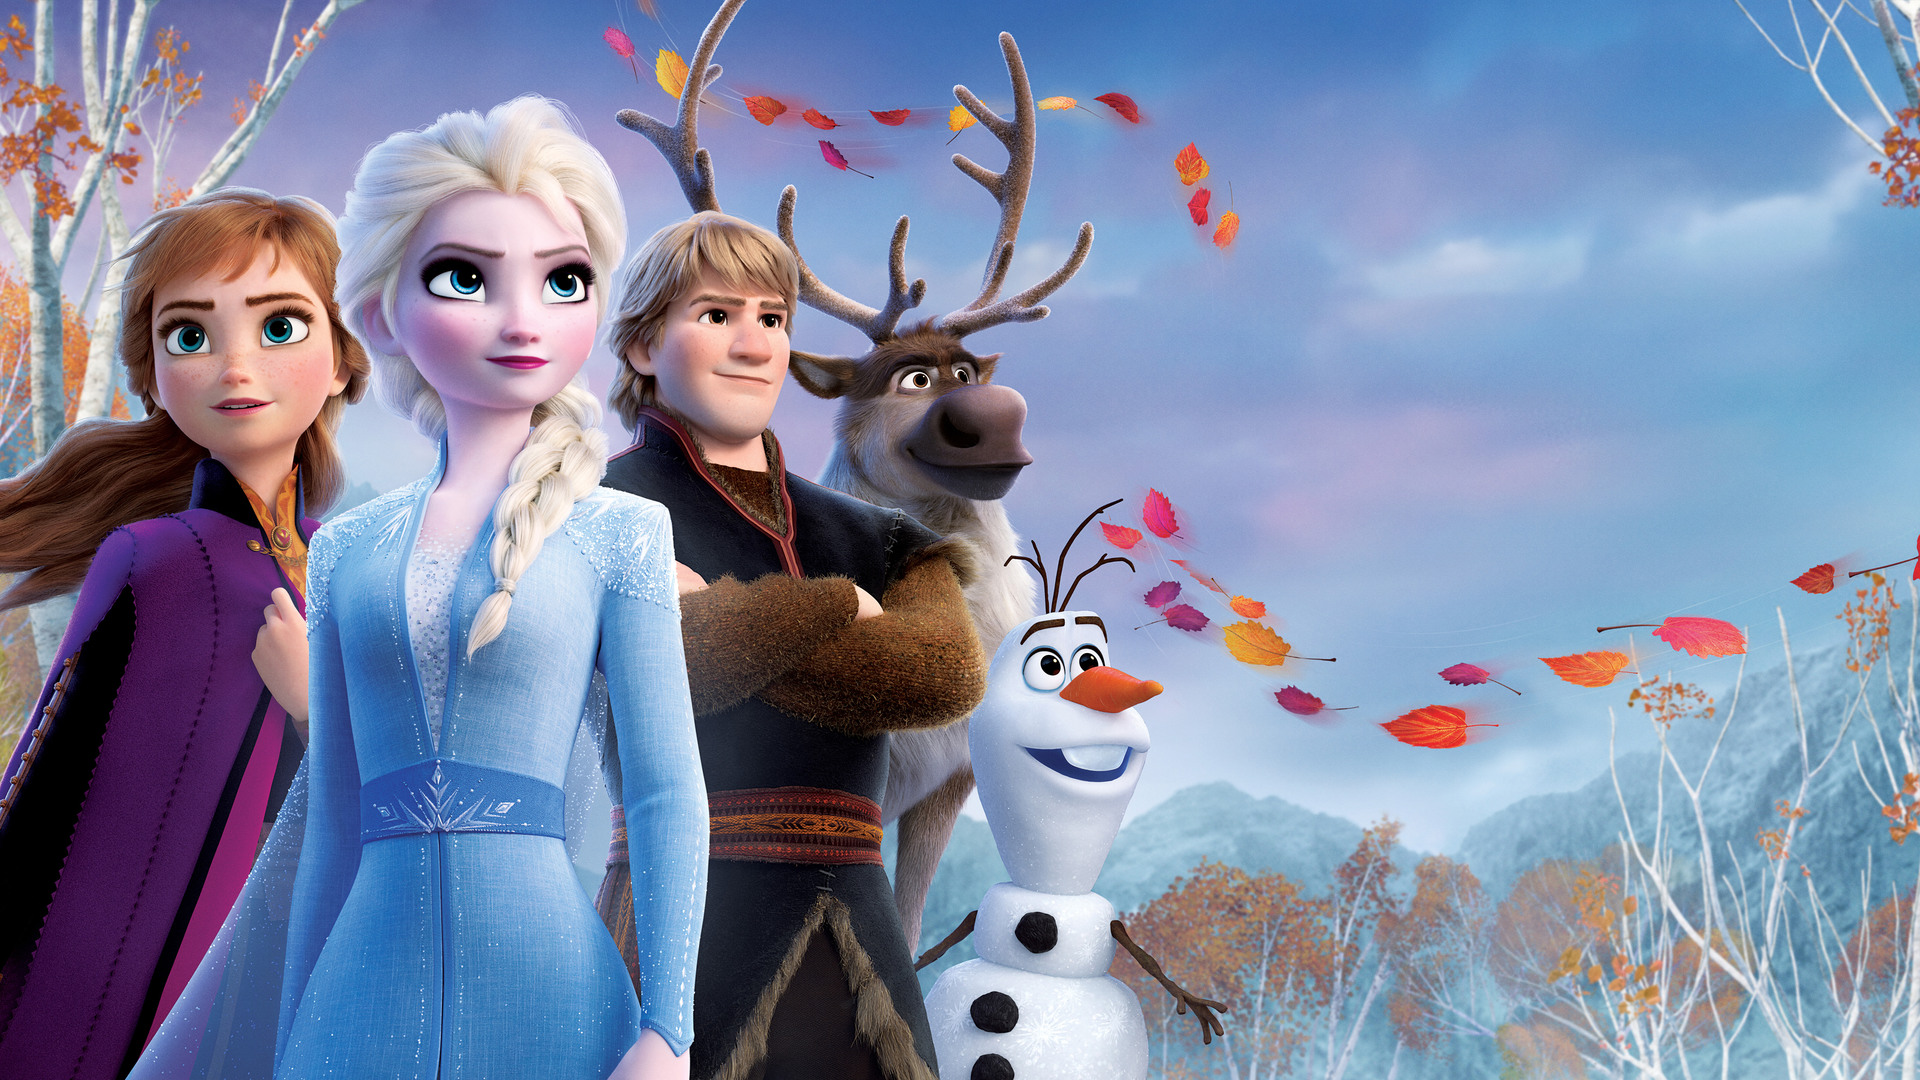 Hermandad. Elsa y Ana lideran un reino, donde Kristoff asume un rol de acompañante en el empoderamiento de ambas mujeres.